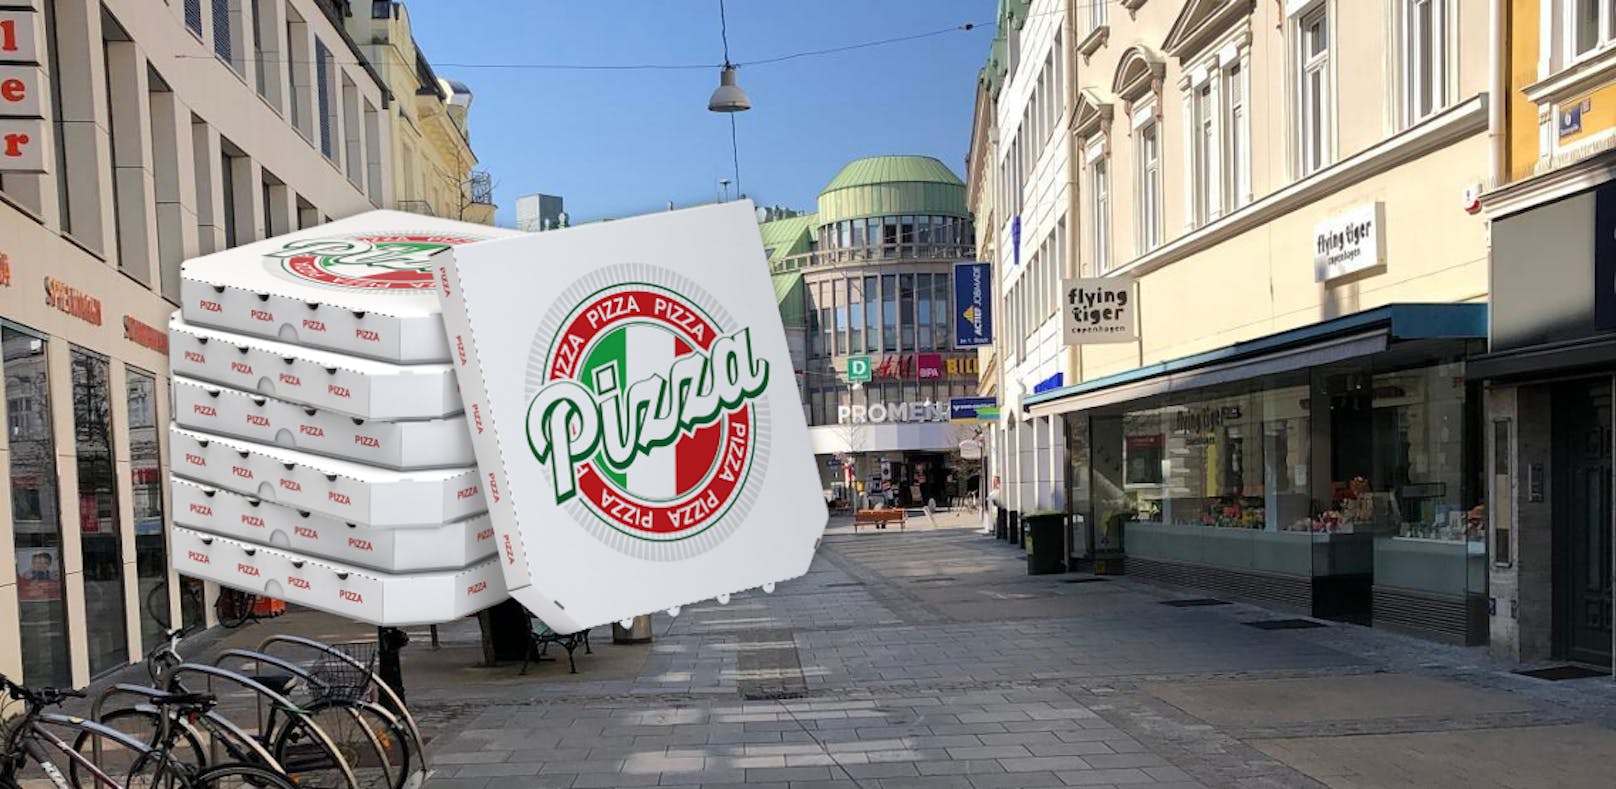 Symbolfoto von der St. Pöltner Innenstadt und Pizza-Kartons.